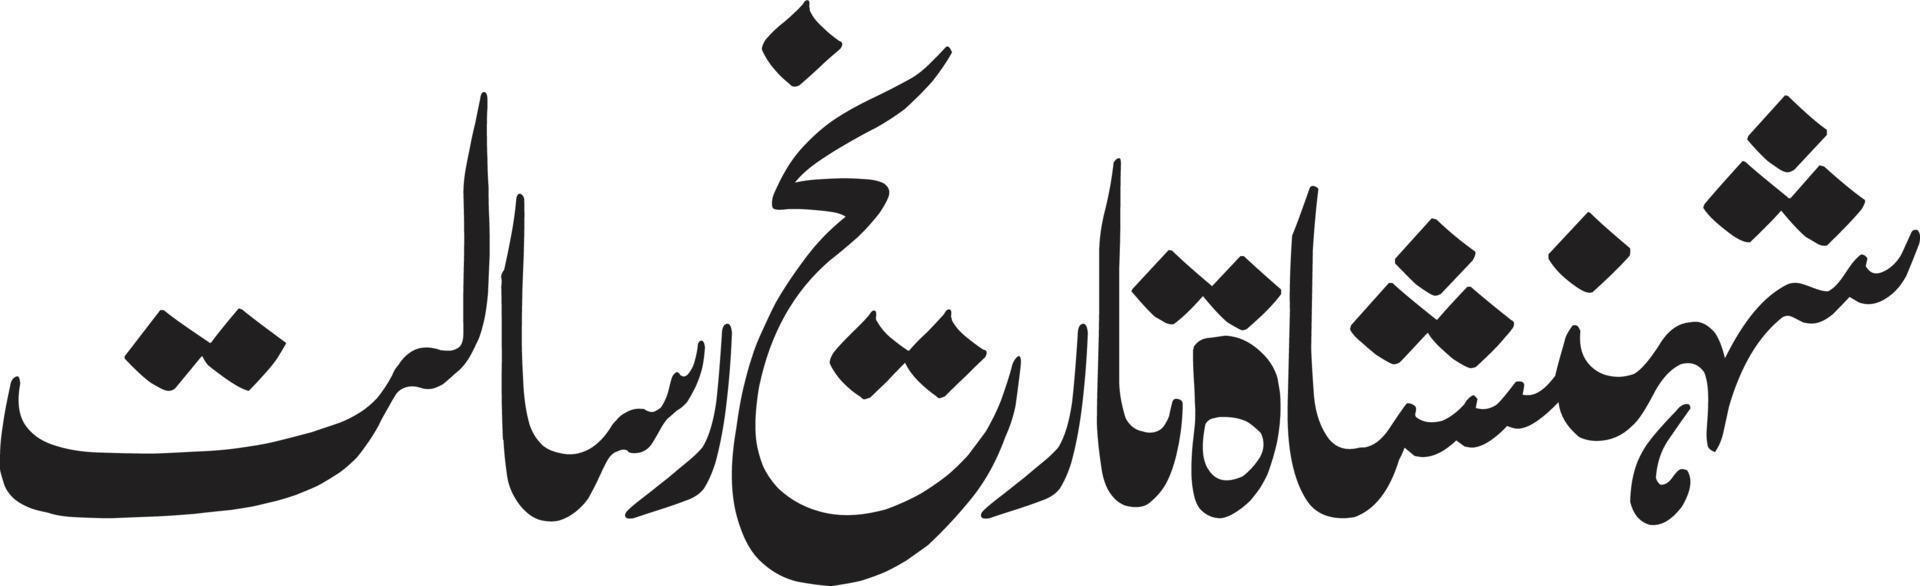 Shan saha tarekh rimessa titolo islamico urdu Arabo calligrafia gratuito vettore